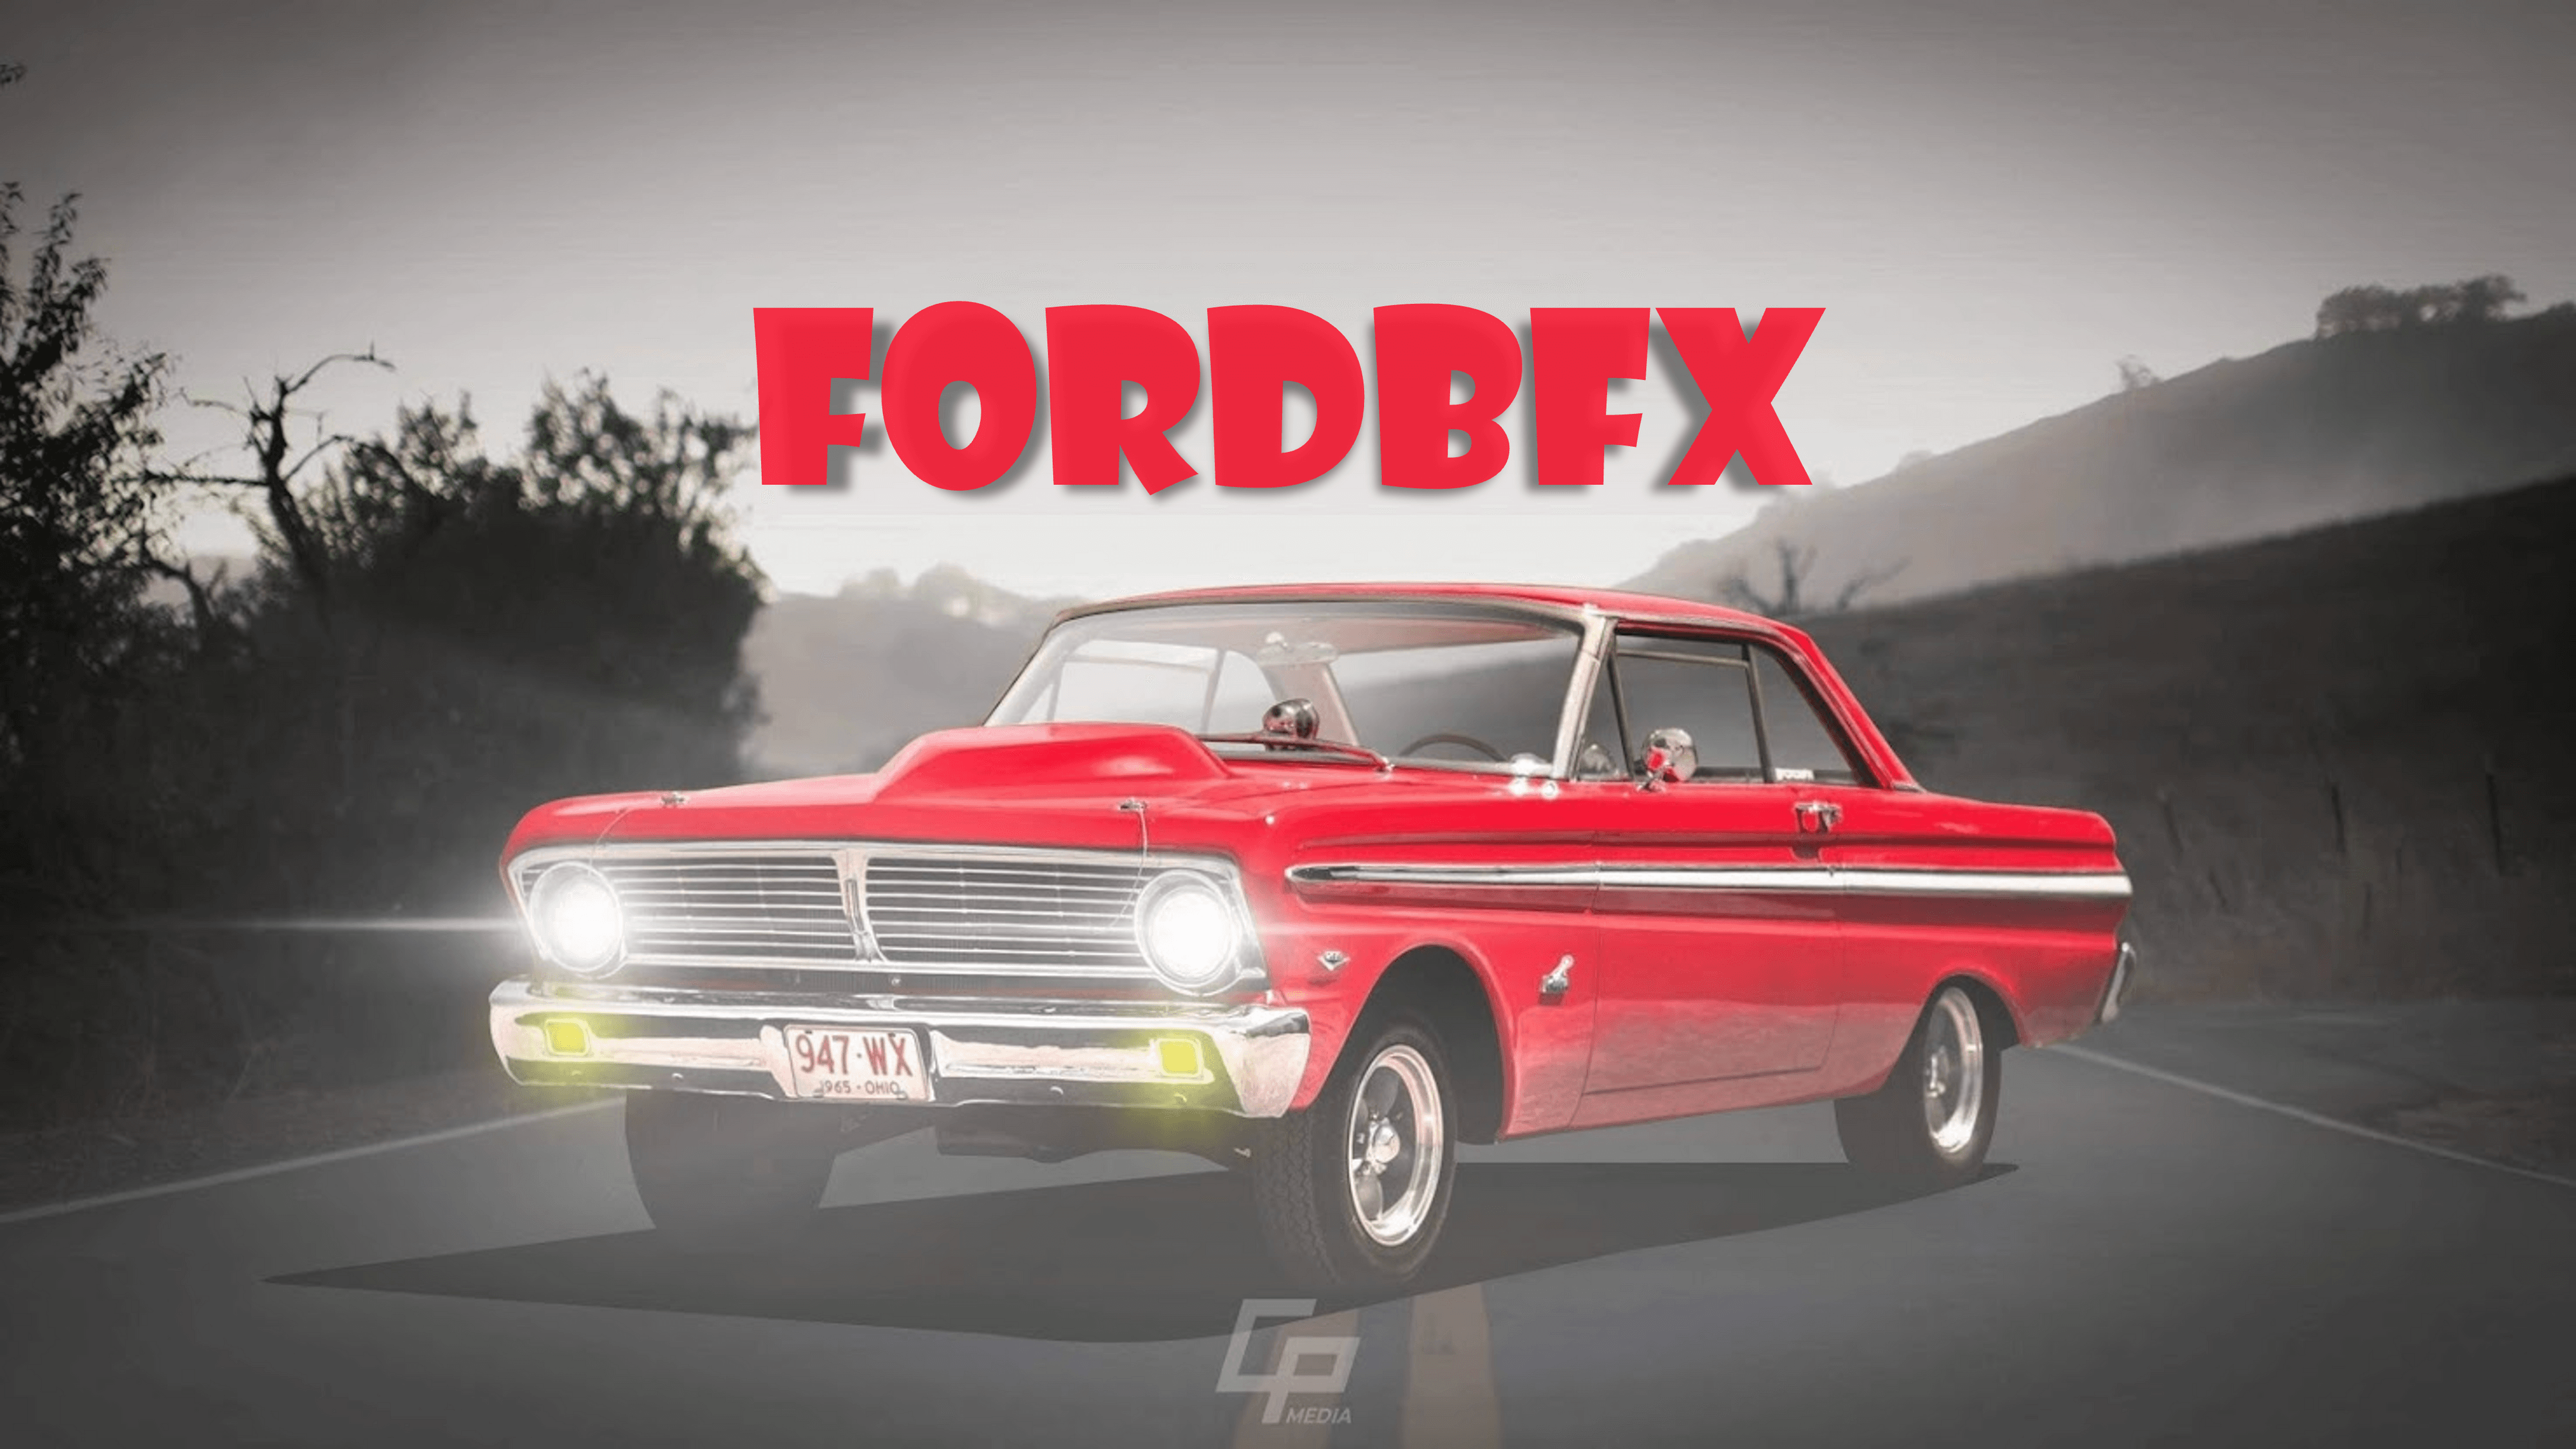 FordBFX banner